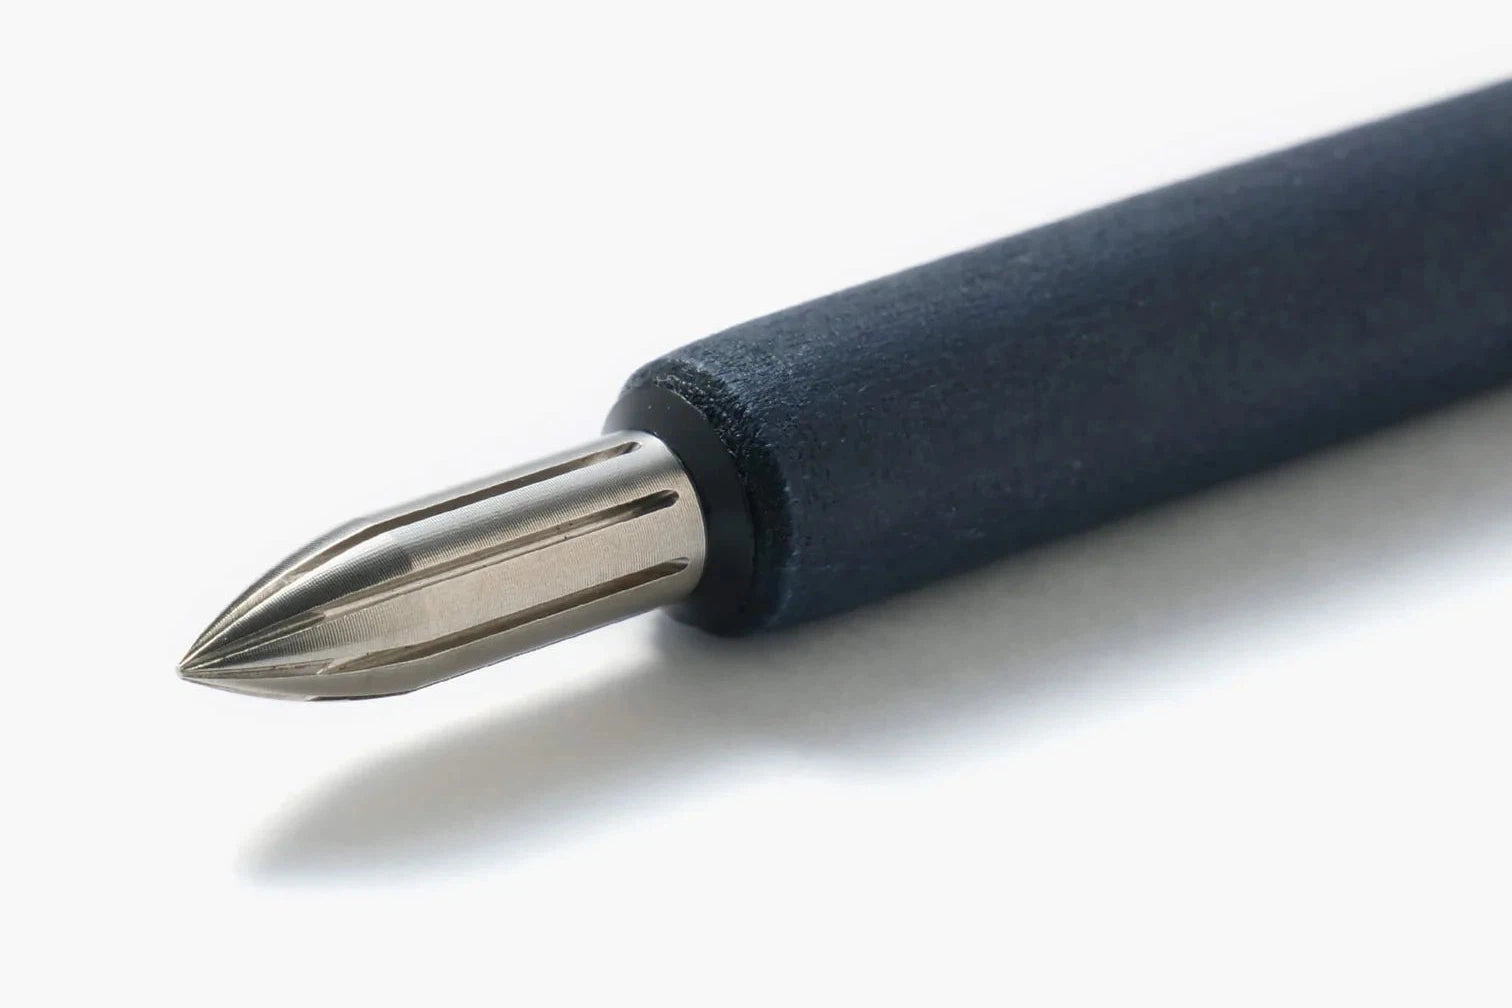 Kakimori Stainless Steel Nib For Dip Pens